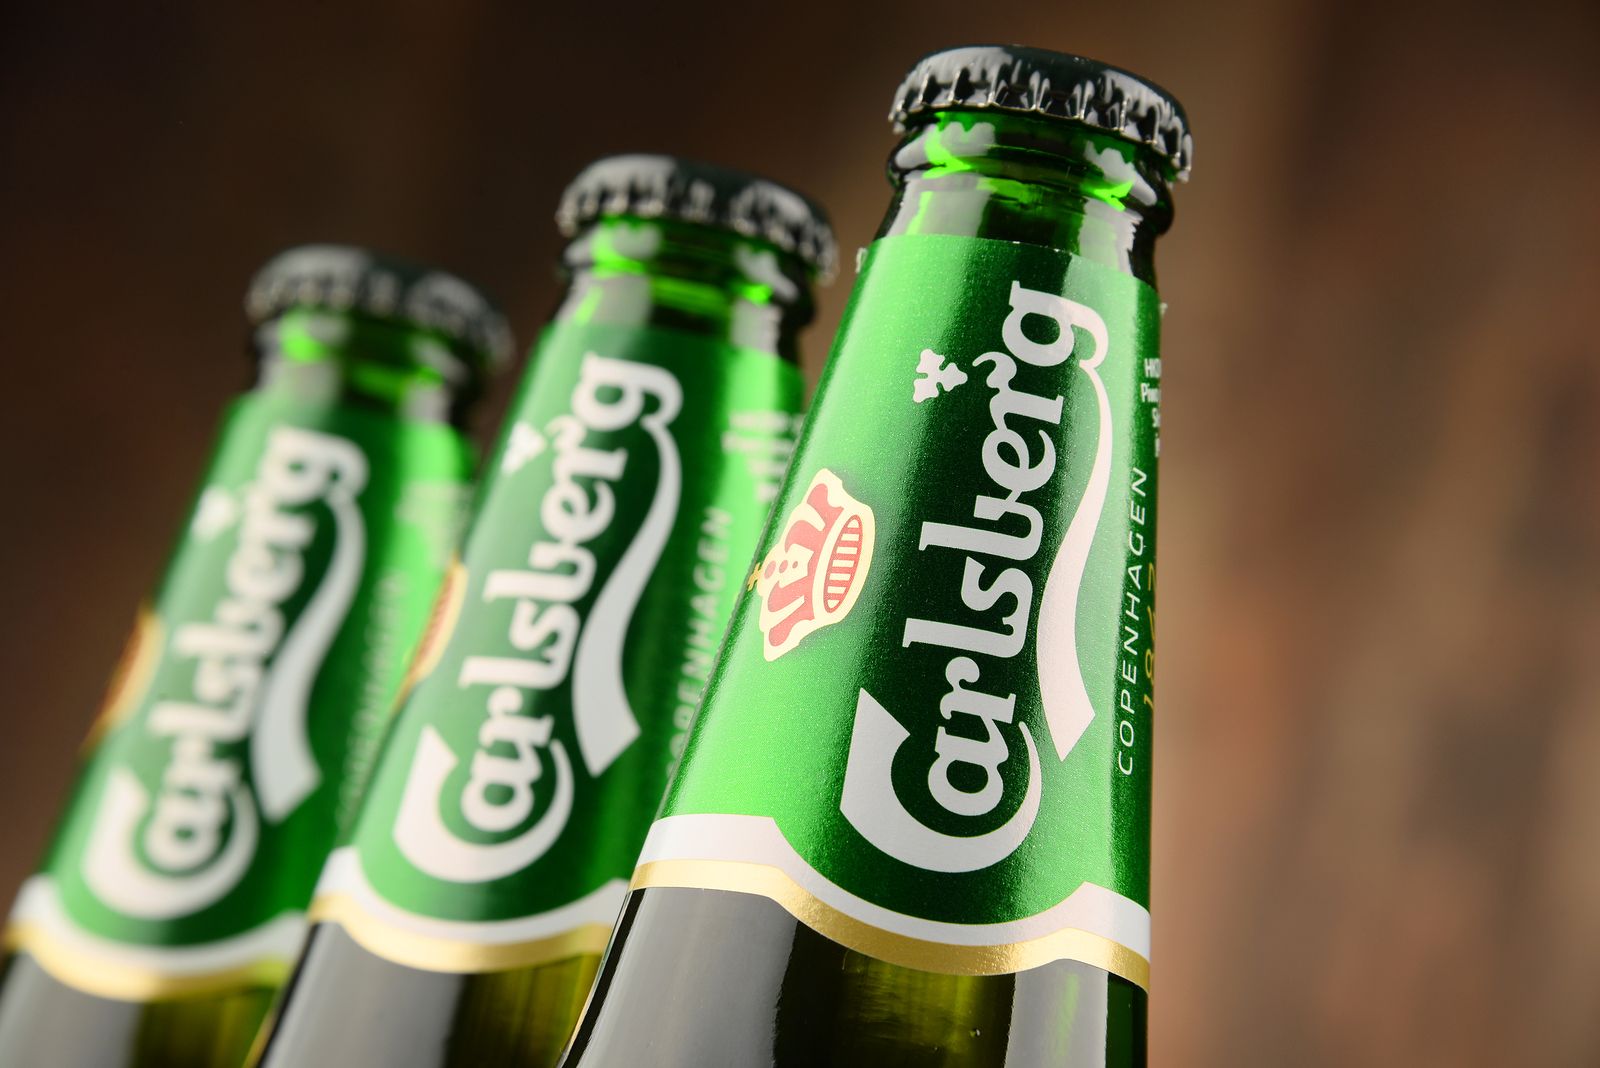 La cerveza Carlsberg se pasa a la competencia en España